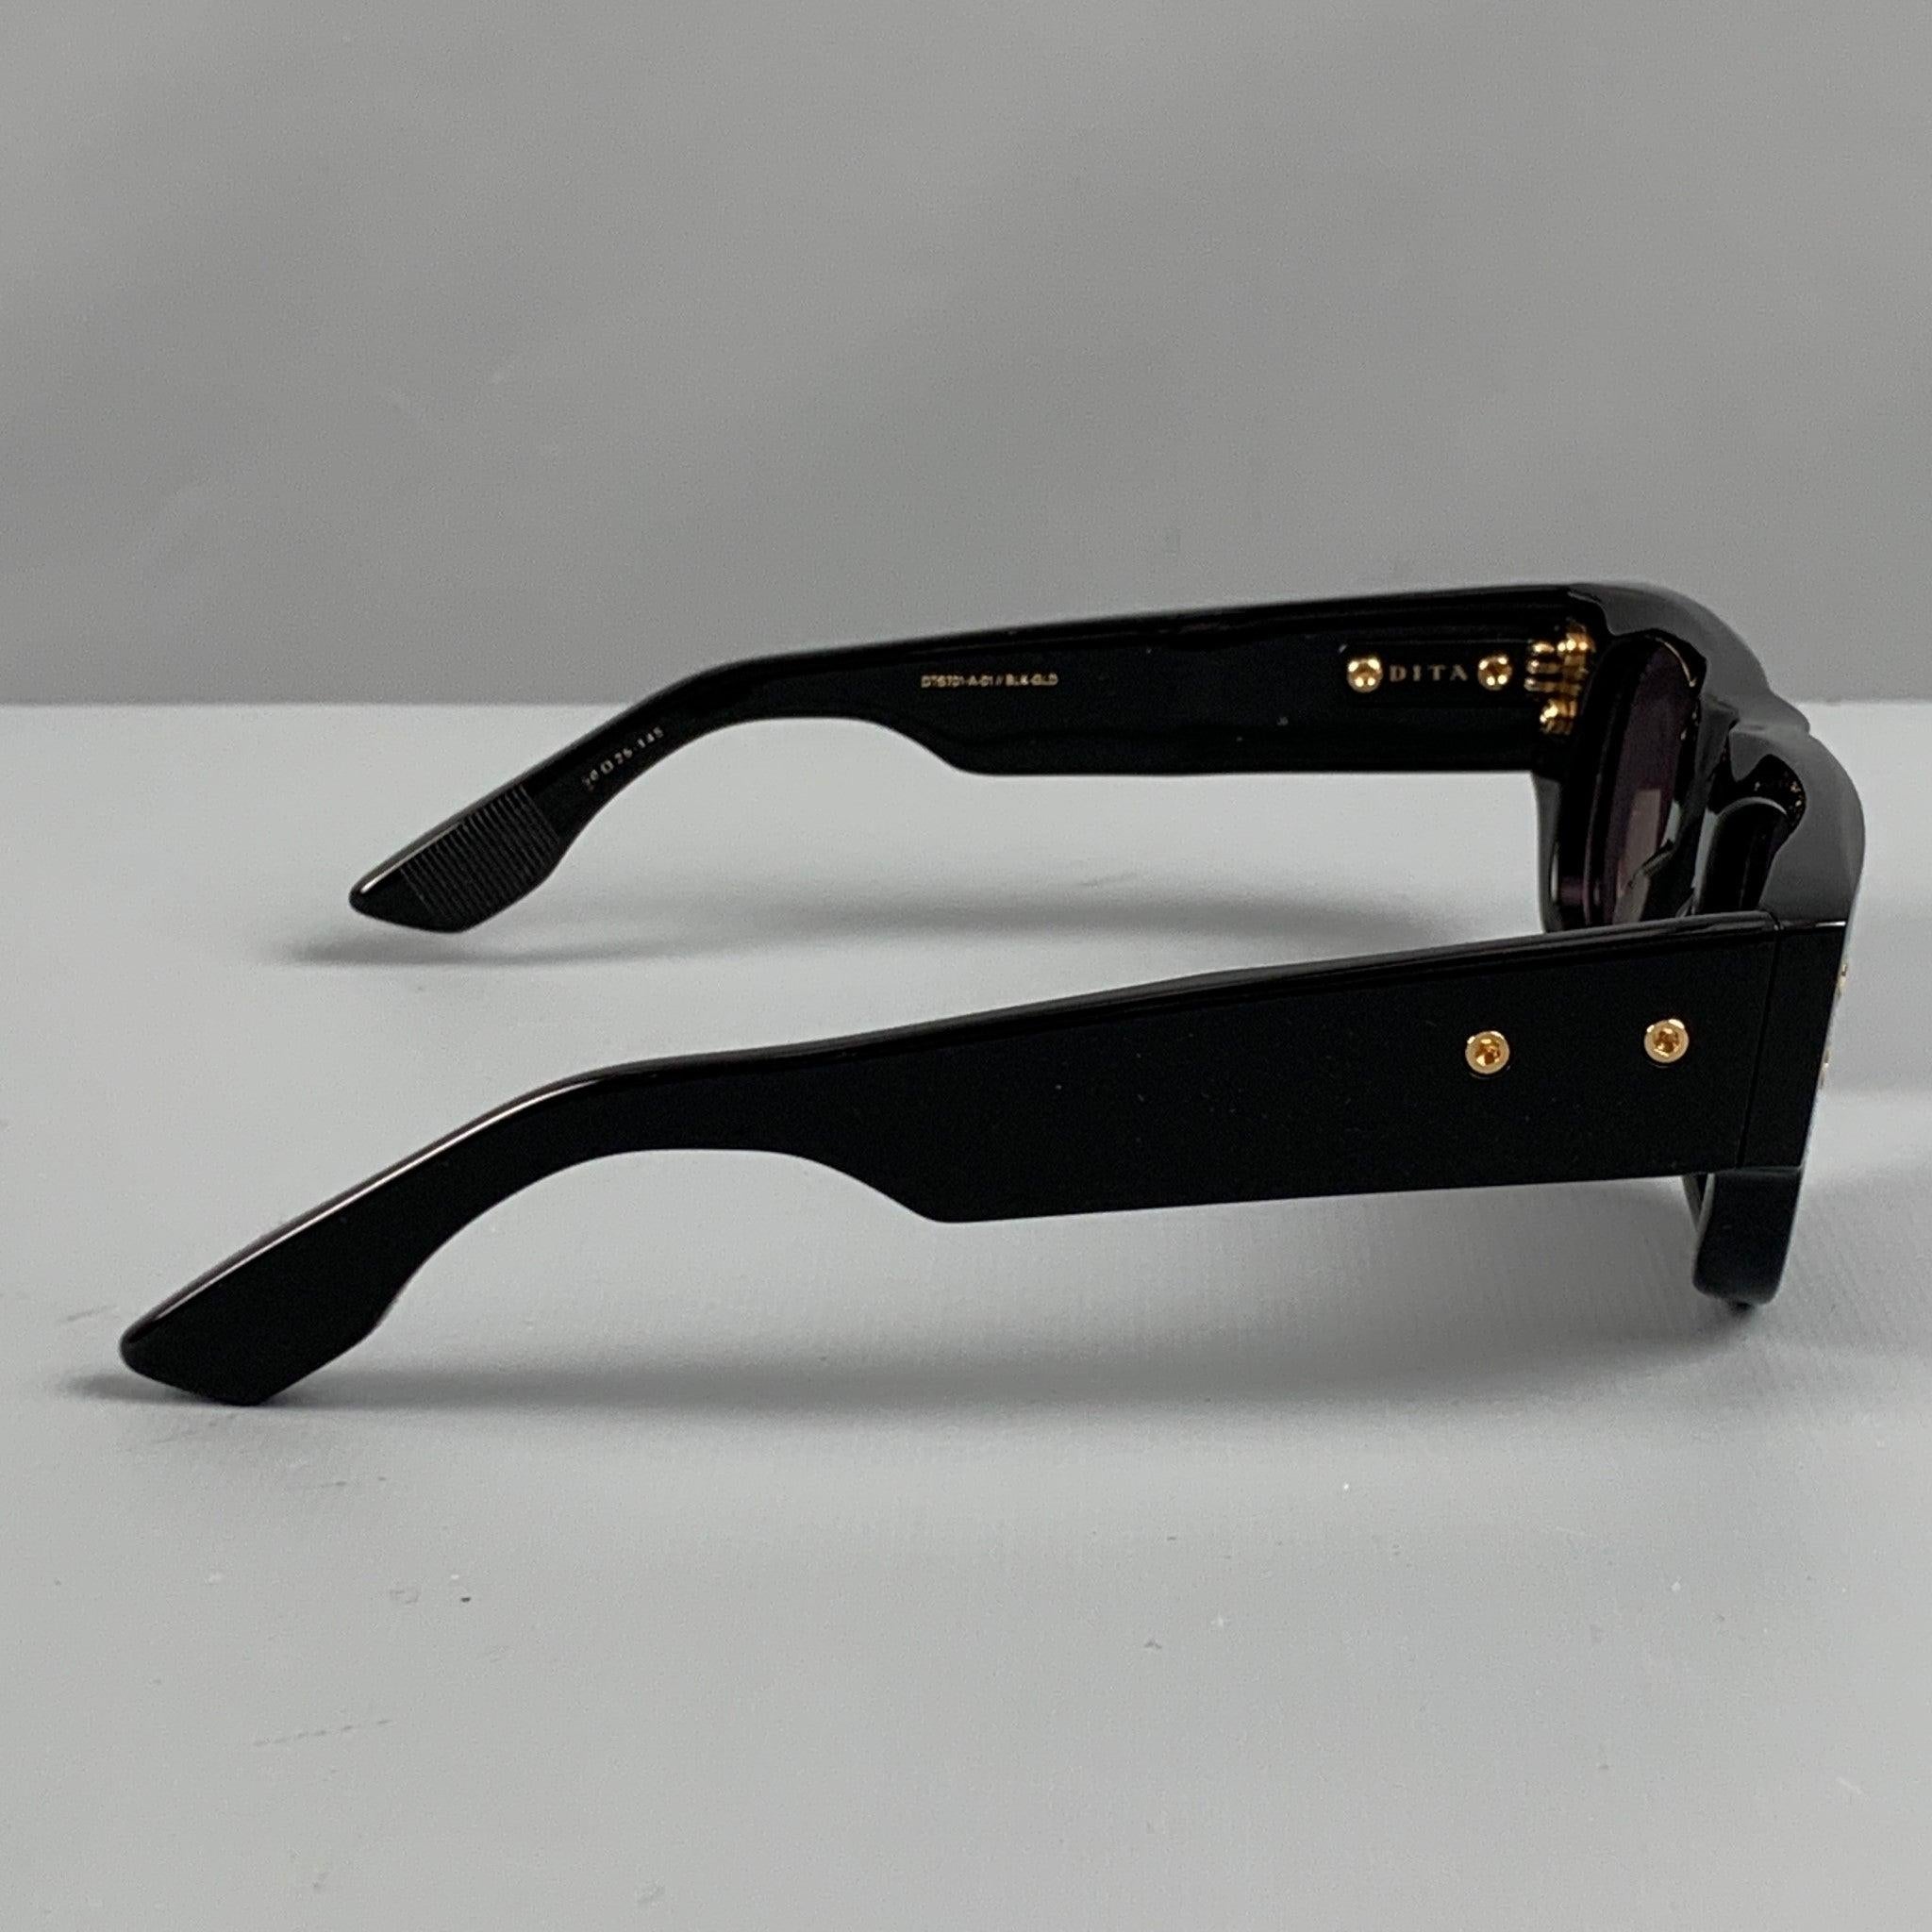 Les lunettes de soleil DITA MUSKEL sont en acétate noir avec des verres teintés et une monture en or. Comprend l'étui. Fabriqué au Japon. Excellent état d'origine.  

Marqué :   DTS701A--01
 

Mesures : 
  Longueur : 15 cm. Hauteur : 5 cm. 

 